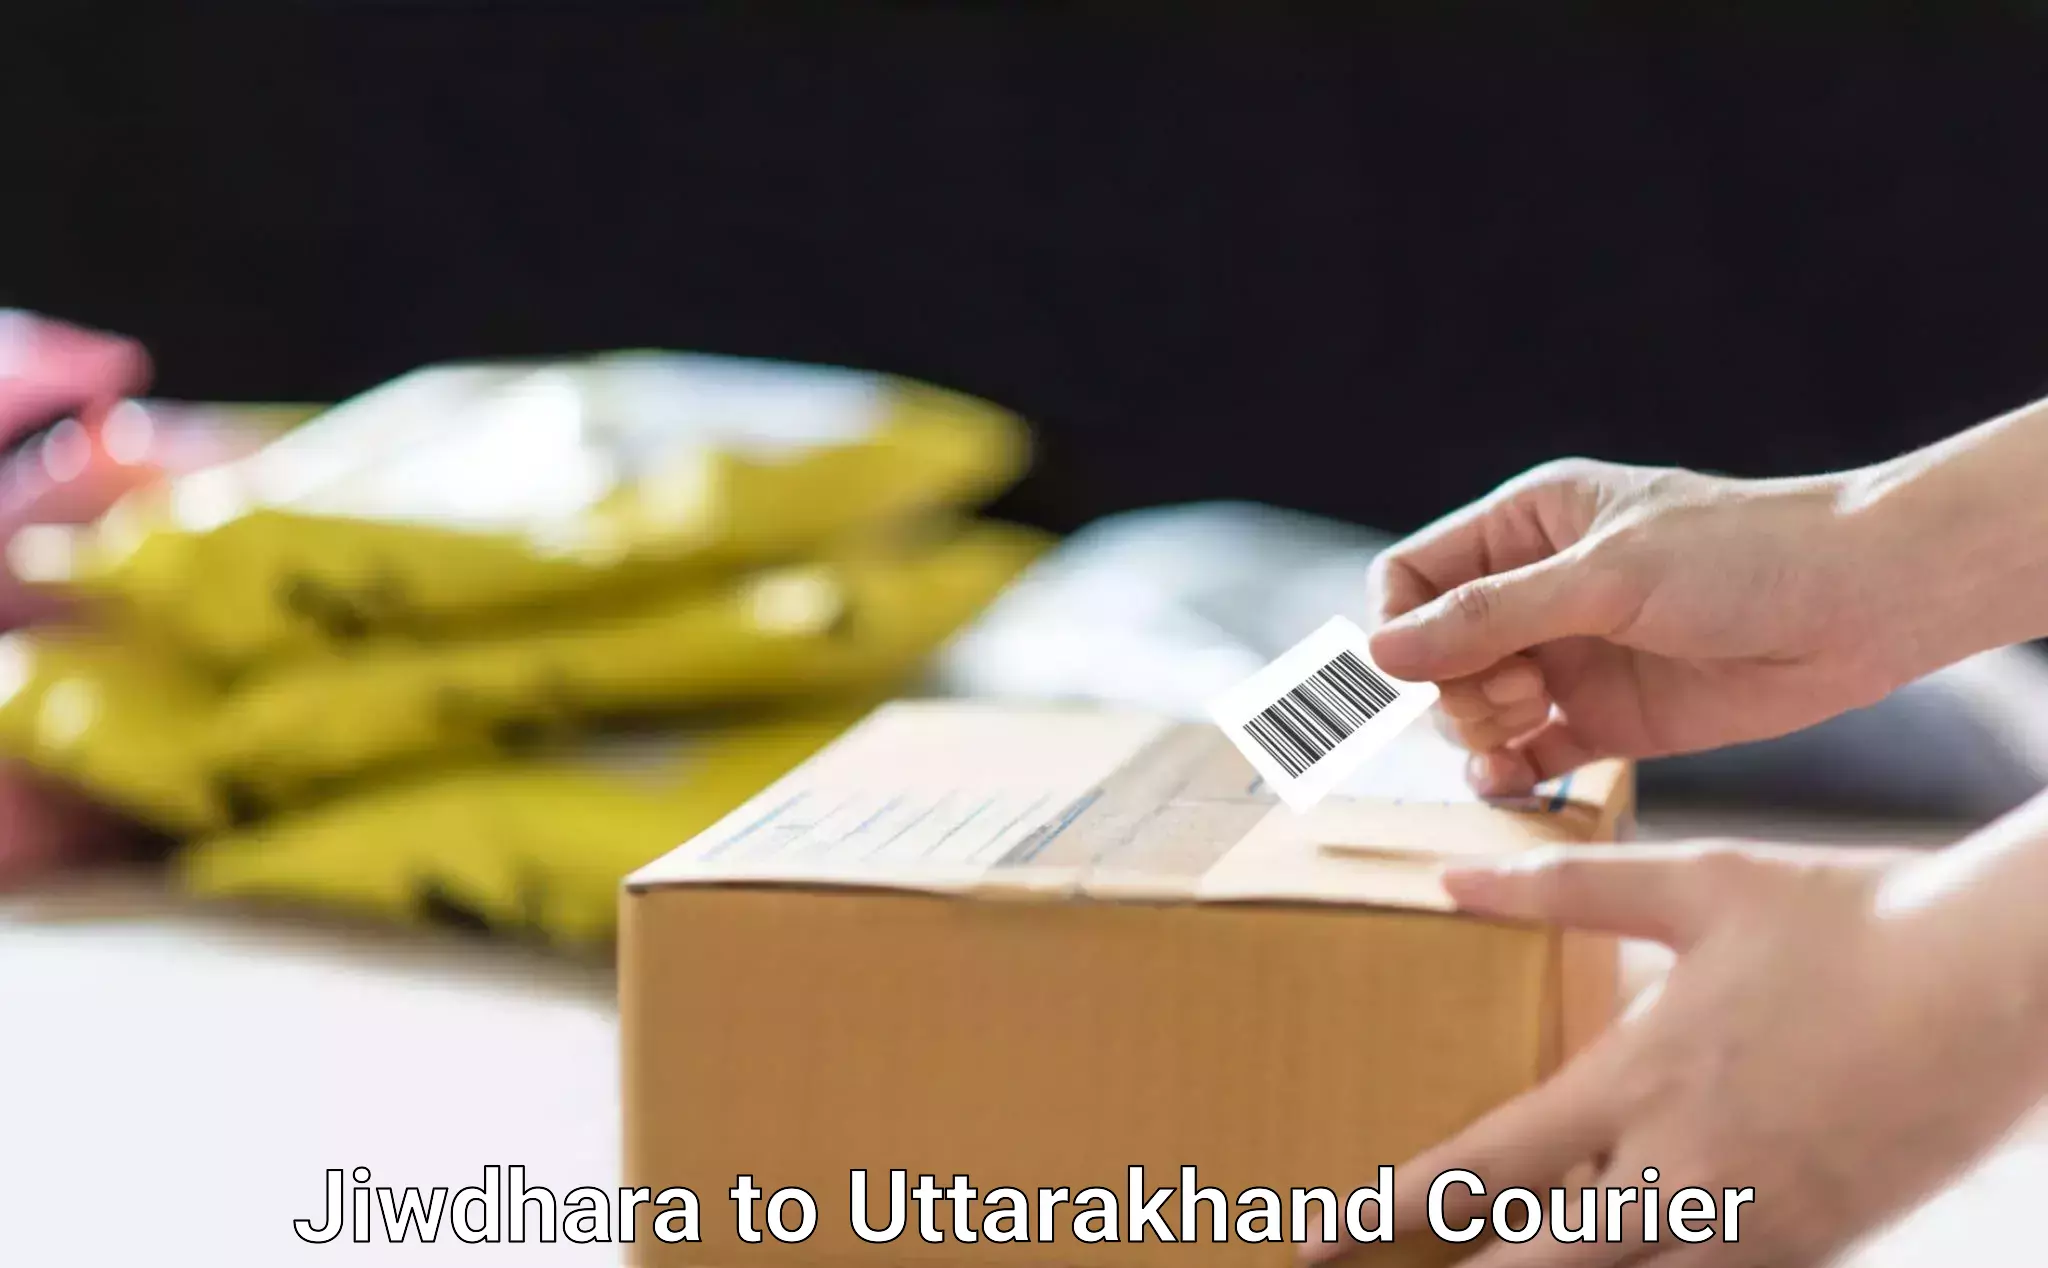 Professional moving strategies Jiwdhara to Pithoragarh